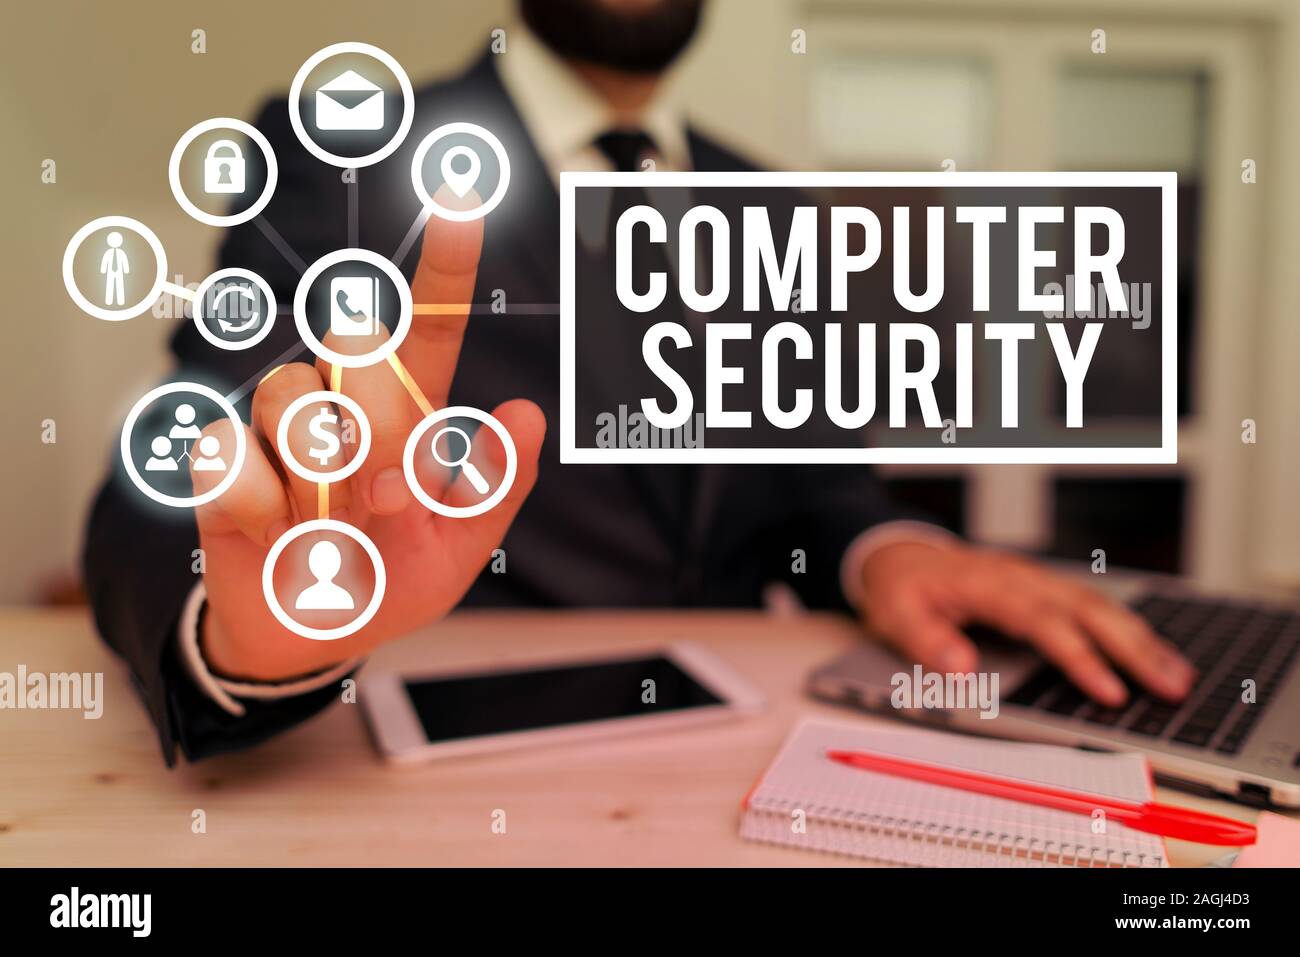 Schreiben Hinweis Ubersicht Computer Sicherheit Business Konzept Fur Schutz Der Computersysteme Von Diebstahl Oder Beschadigung Stockfotografie Alamy